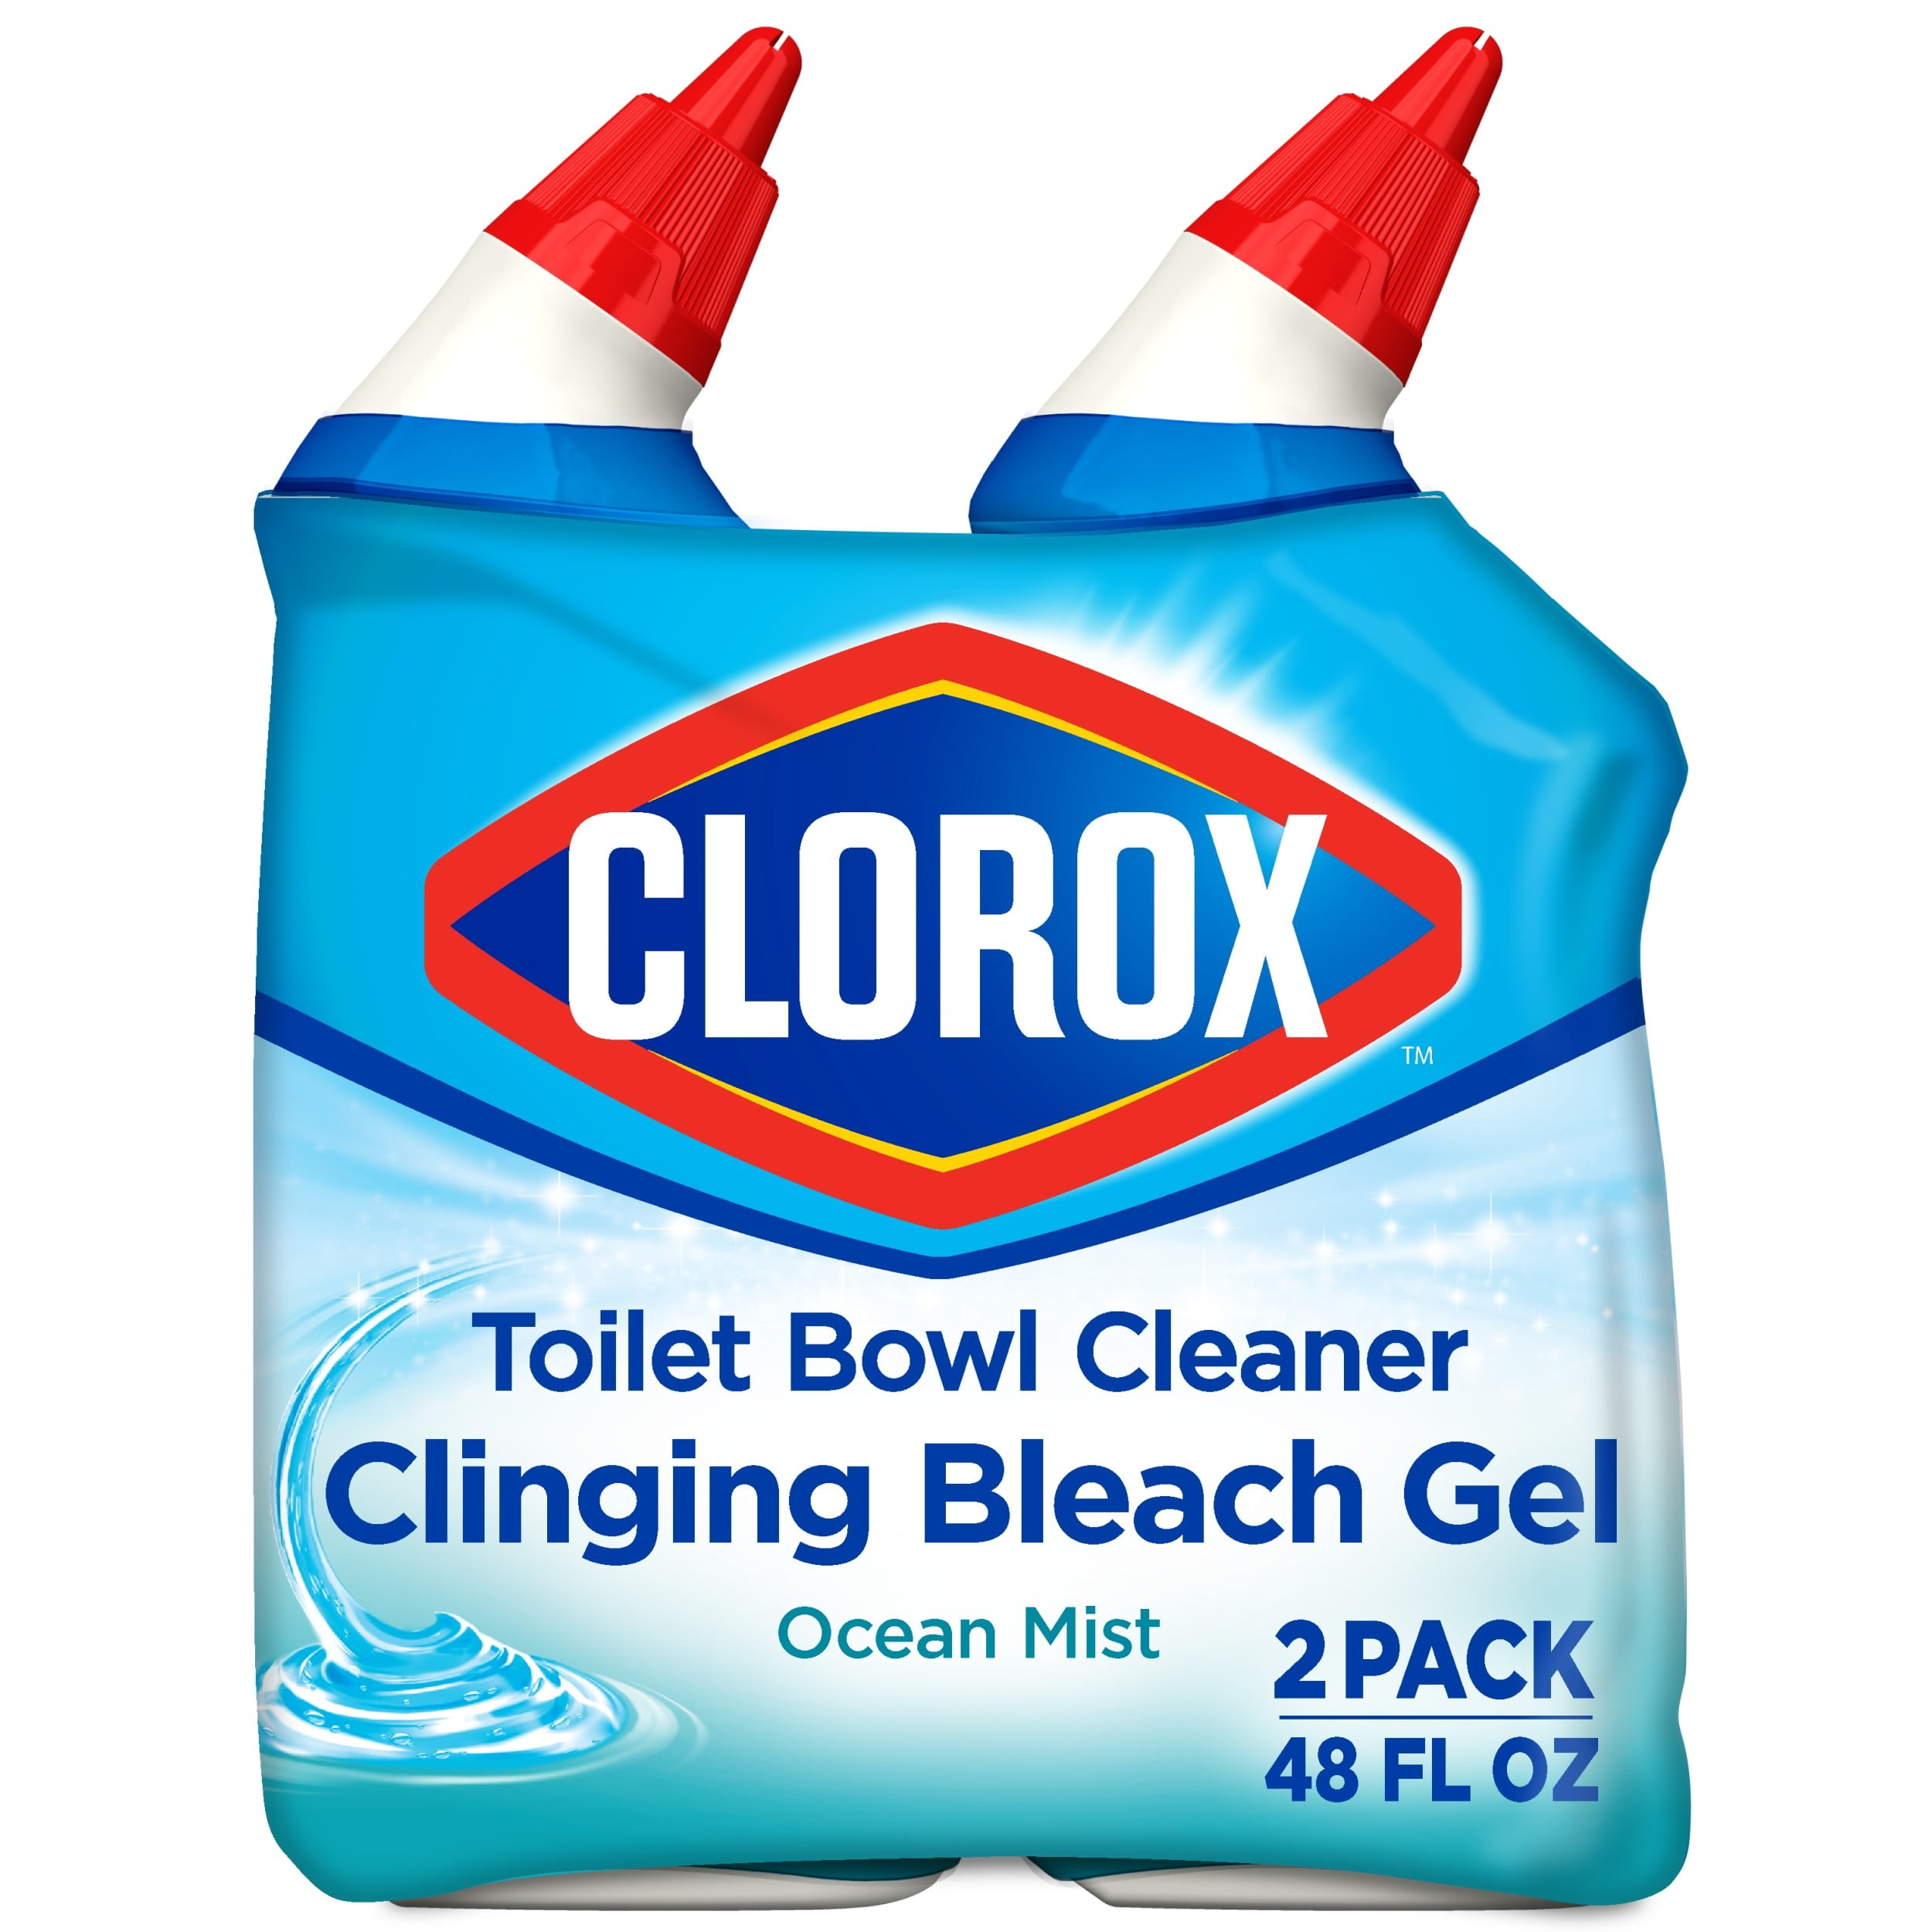 Clorox Toilet Bowl Cleaner Clinging Bleach Gel, Ocean Mist - 24 oz, 2 Pack